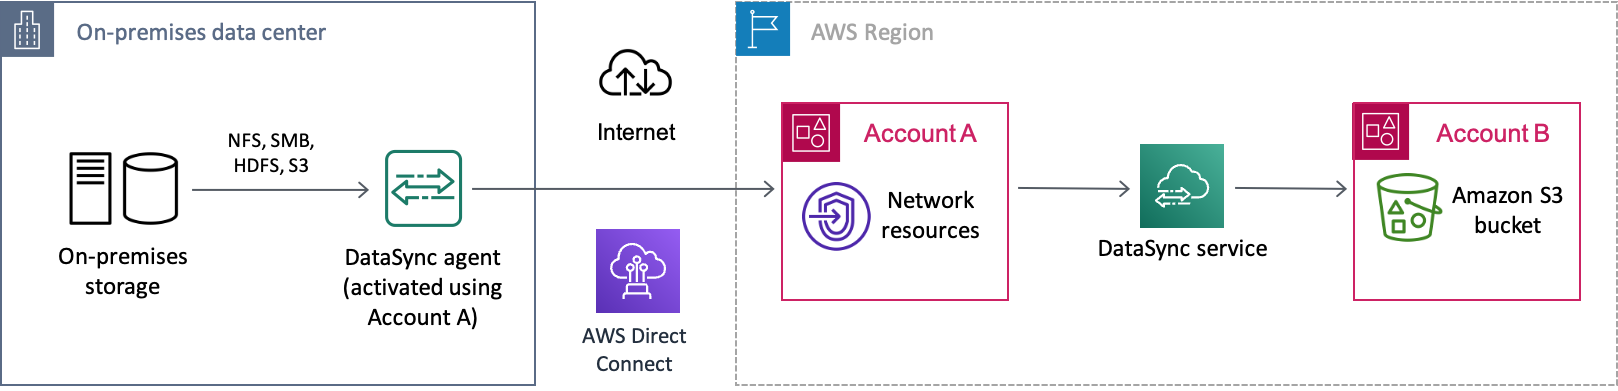 Um exemplo deDataSync cenário de transferência de dados de um sistema de armazenamento local pela Internet paraAWS. Os dados são transferidos primeiro para umaConta da AWS (Conta A), antes de finalmente serem transformados em um bucket do Amazon S3 em outroConta da AWS (Conta B).